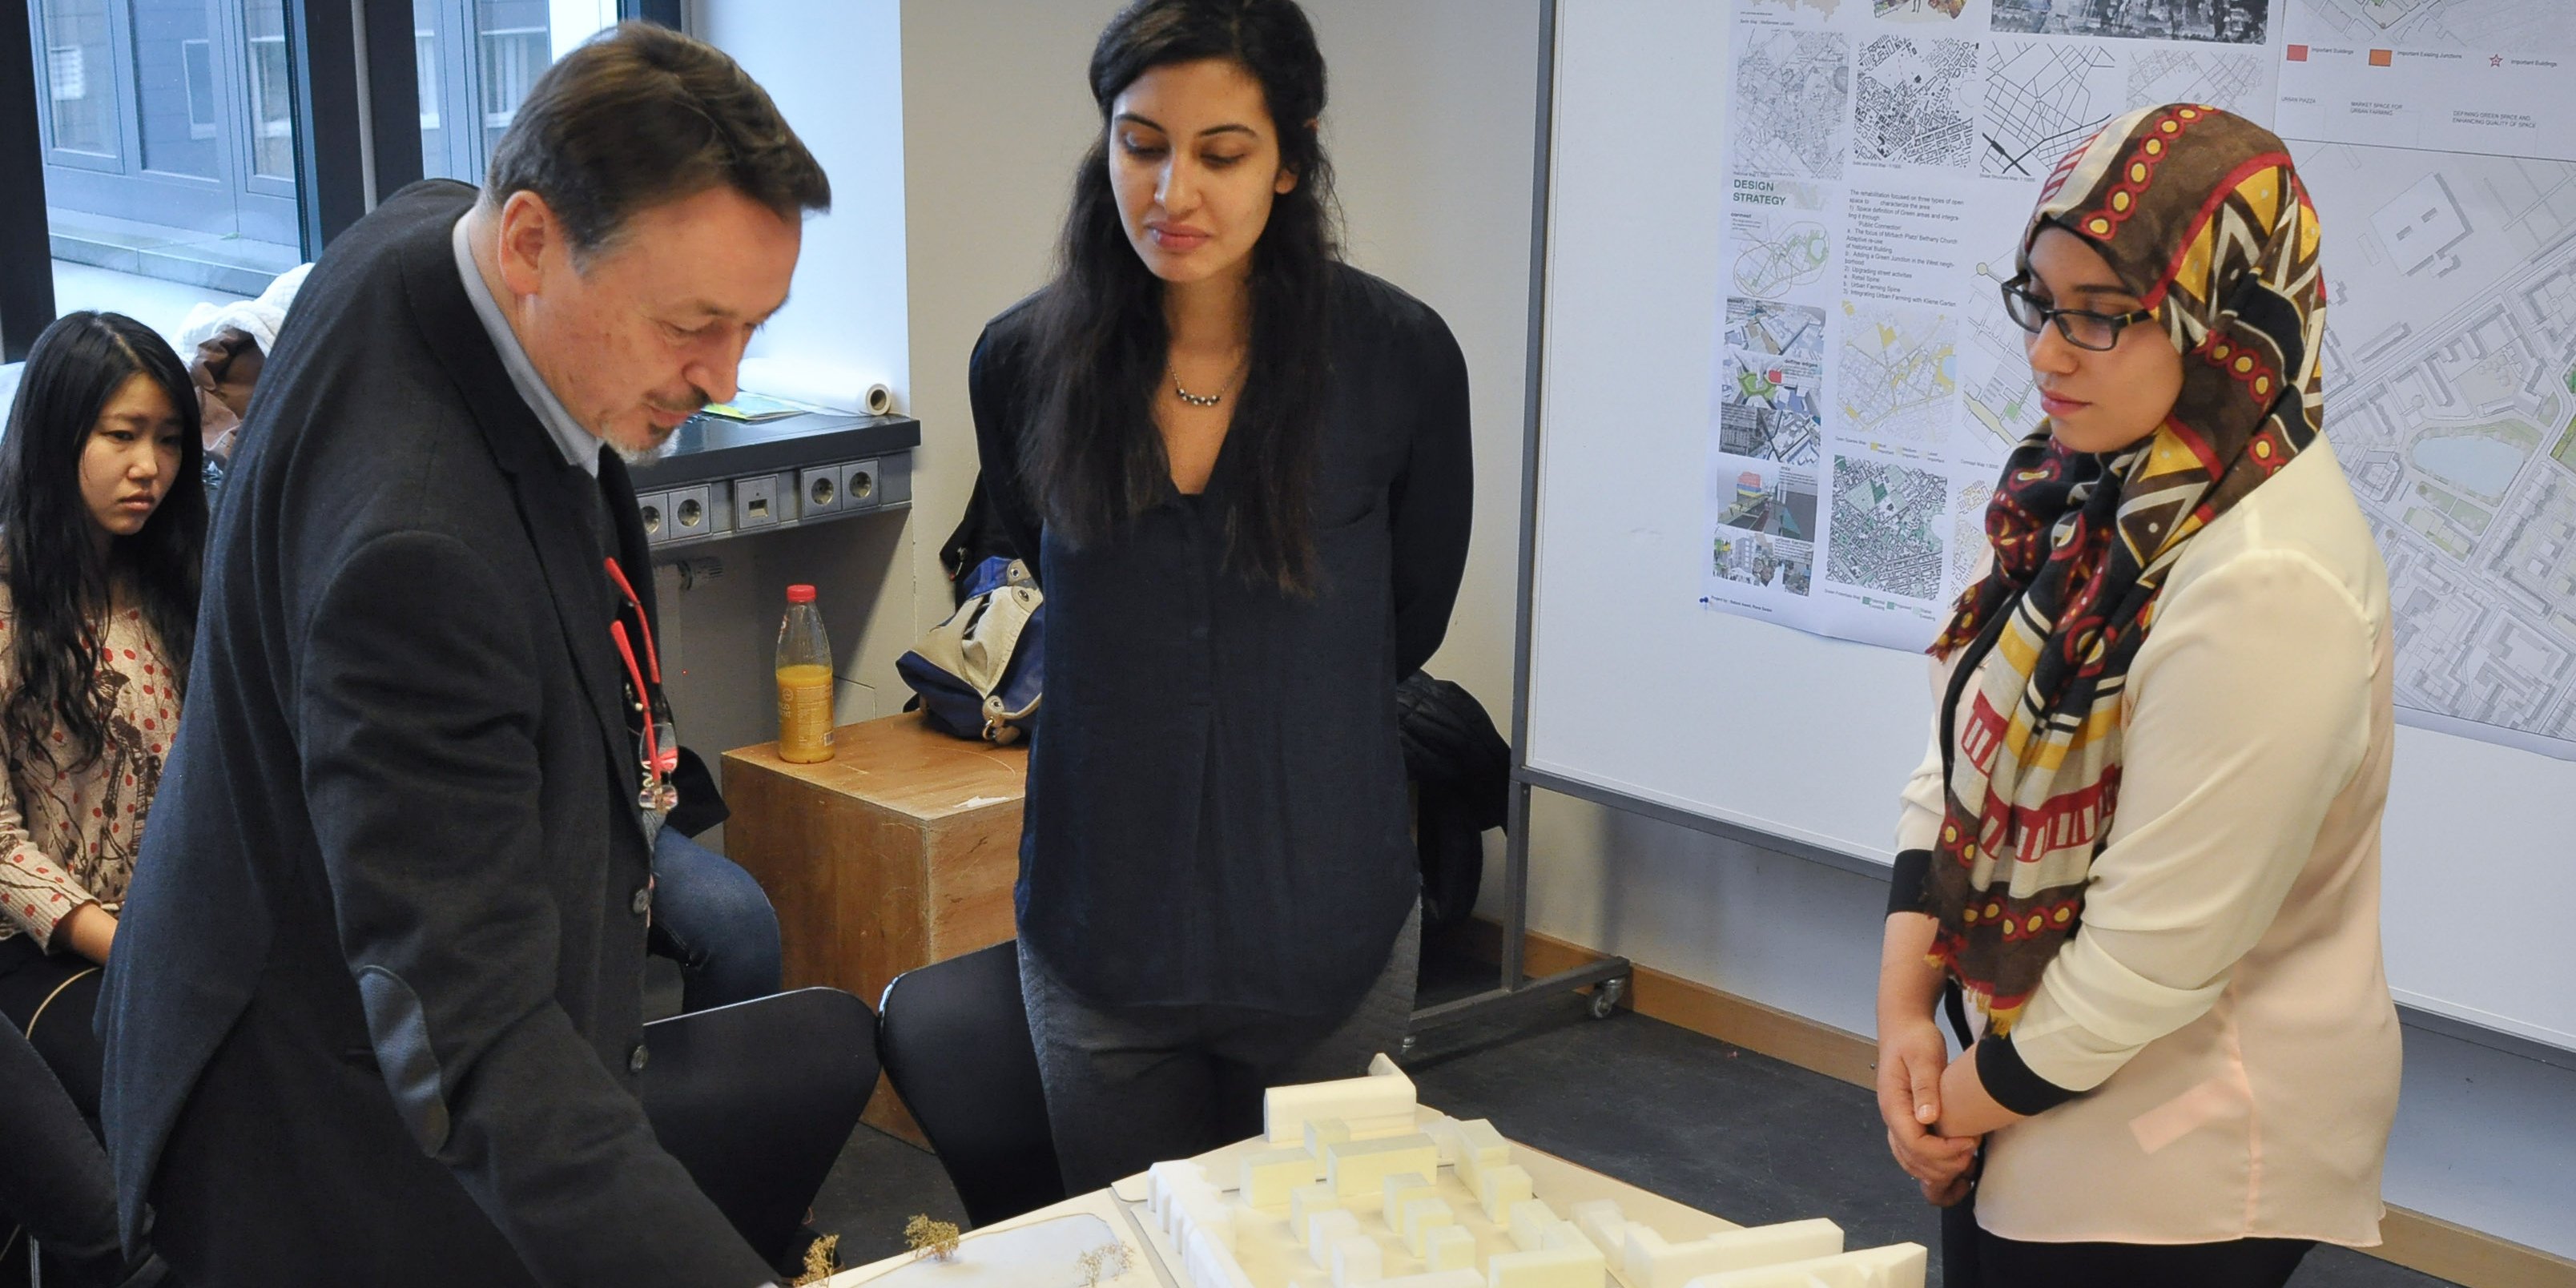 Studentinnen des Master-Studiengangs Urban Design besprechen mit ihrem Professor ein Modell